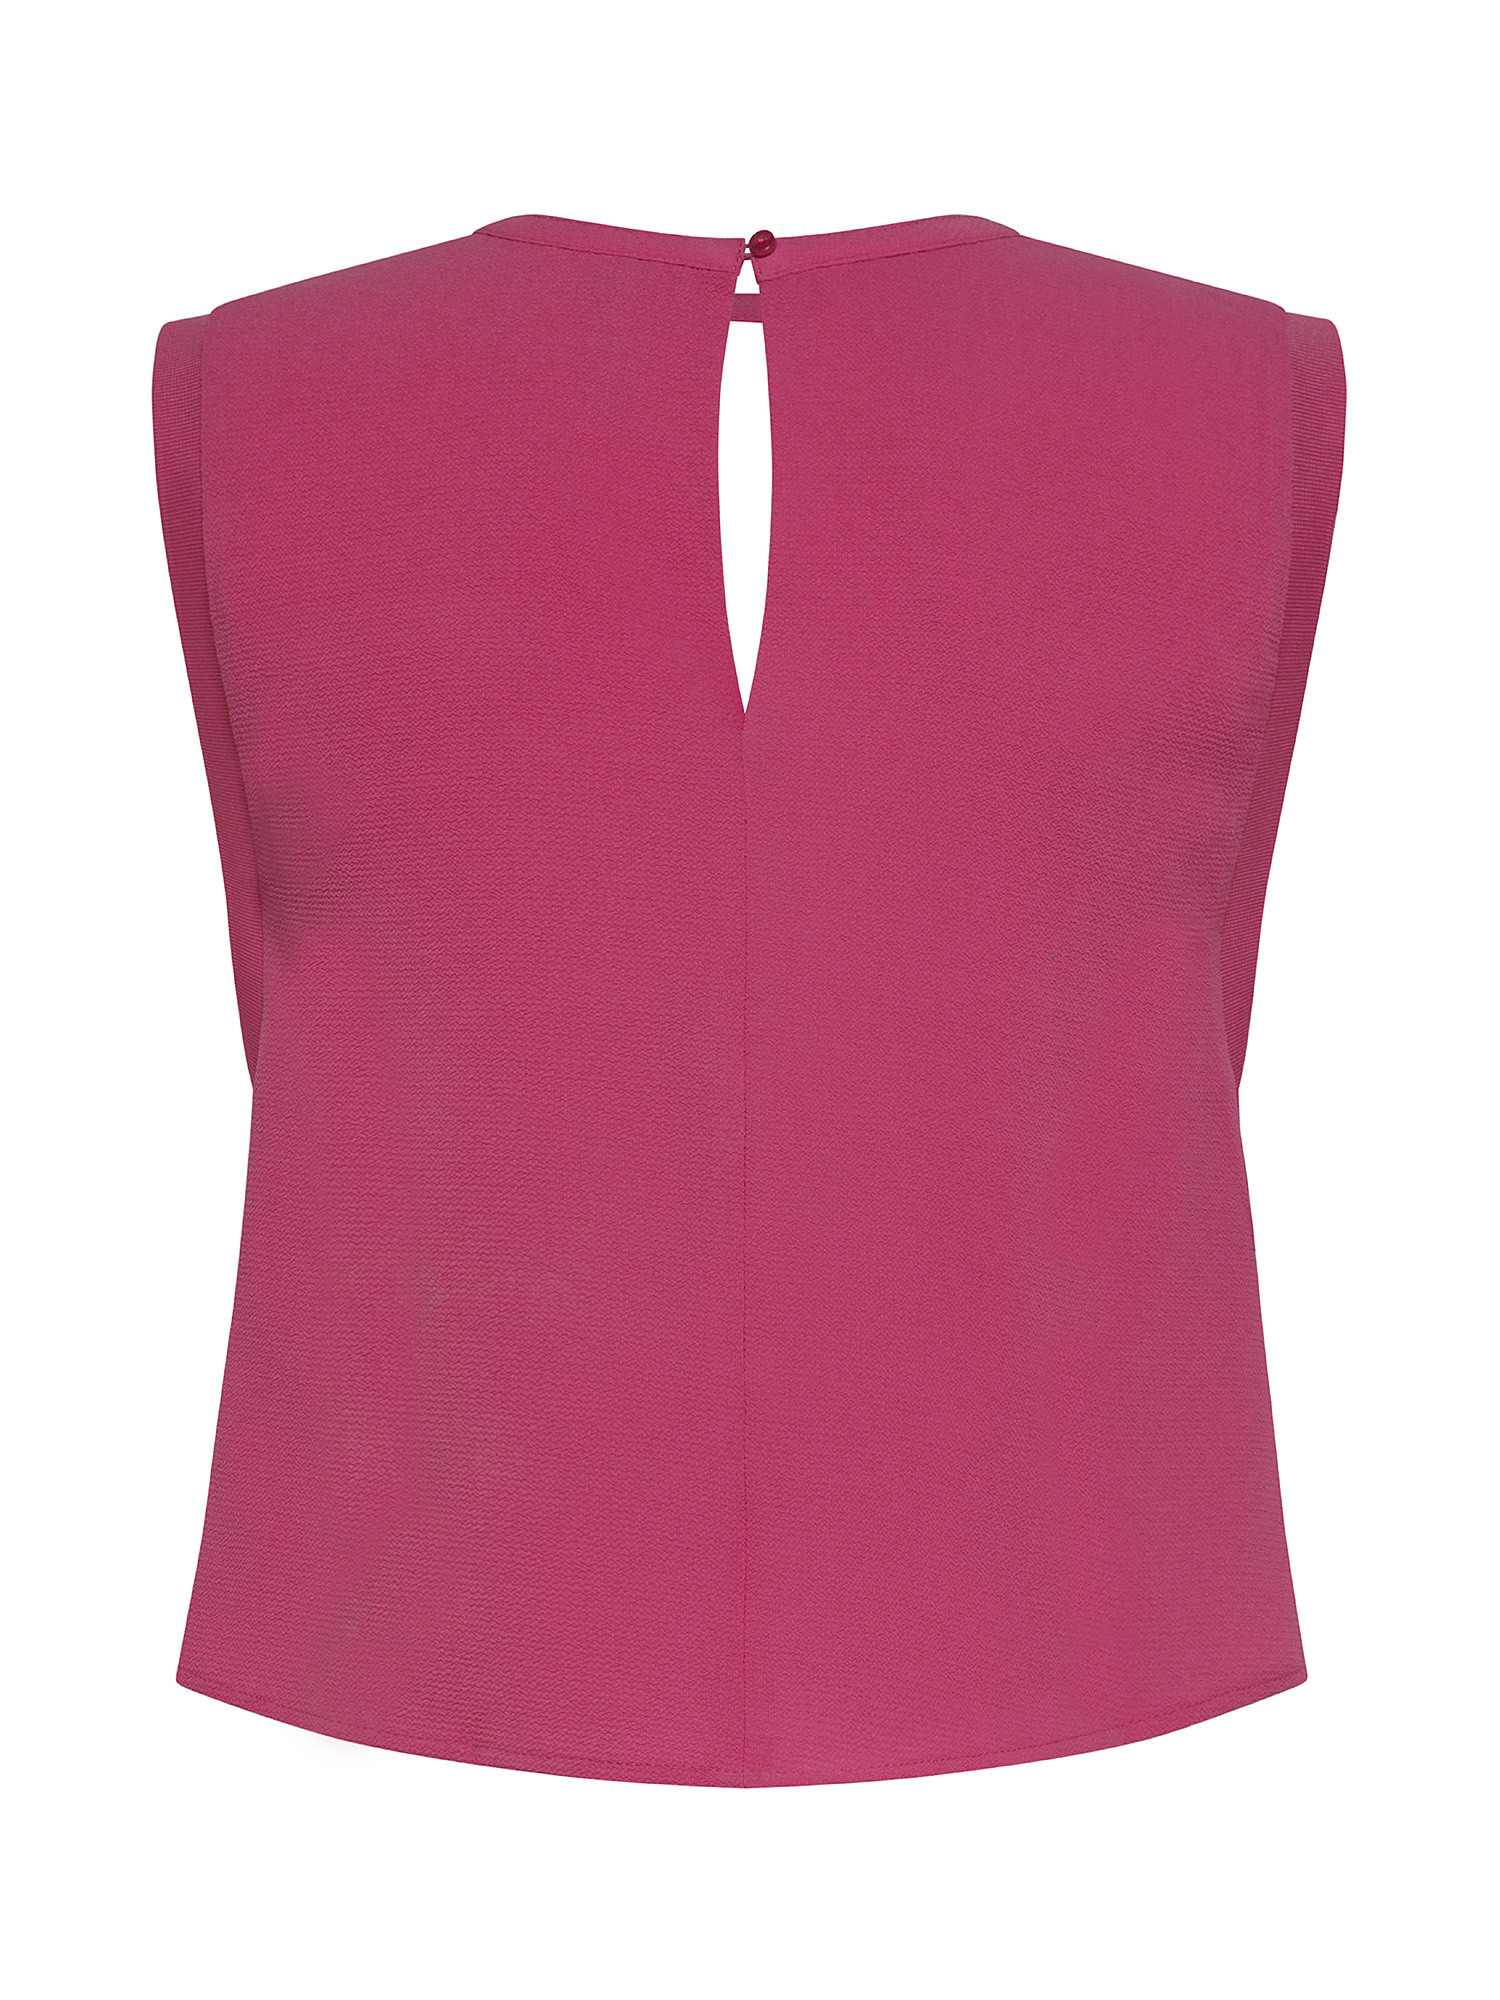 Estefany sleeveless top, Pink Flamingo, large image number 1